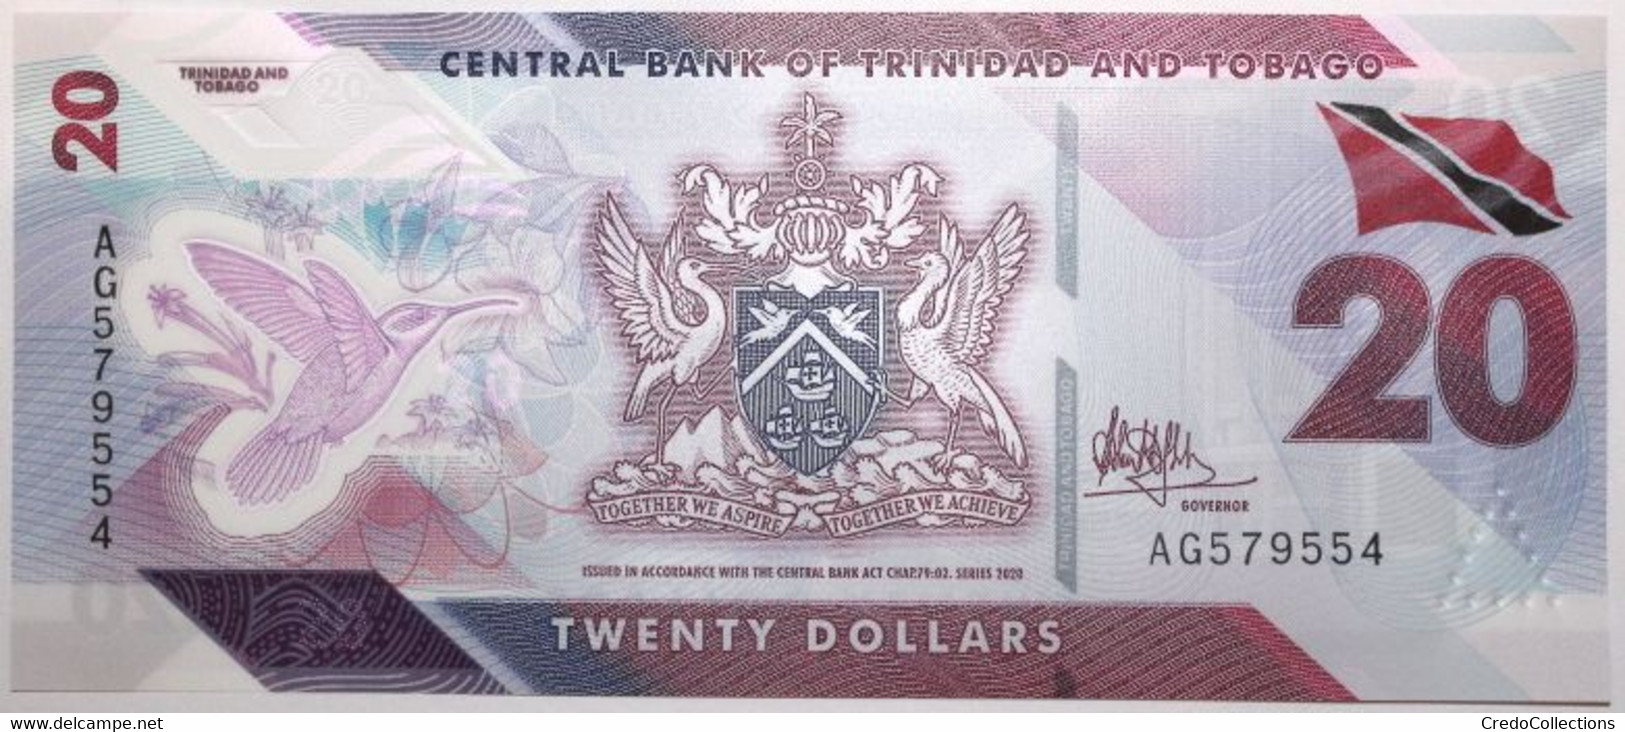 Trinitad Et Tobago - 20 Dollars - 2020 - PICK 63 - NEUF - Trinité & Tobago